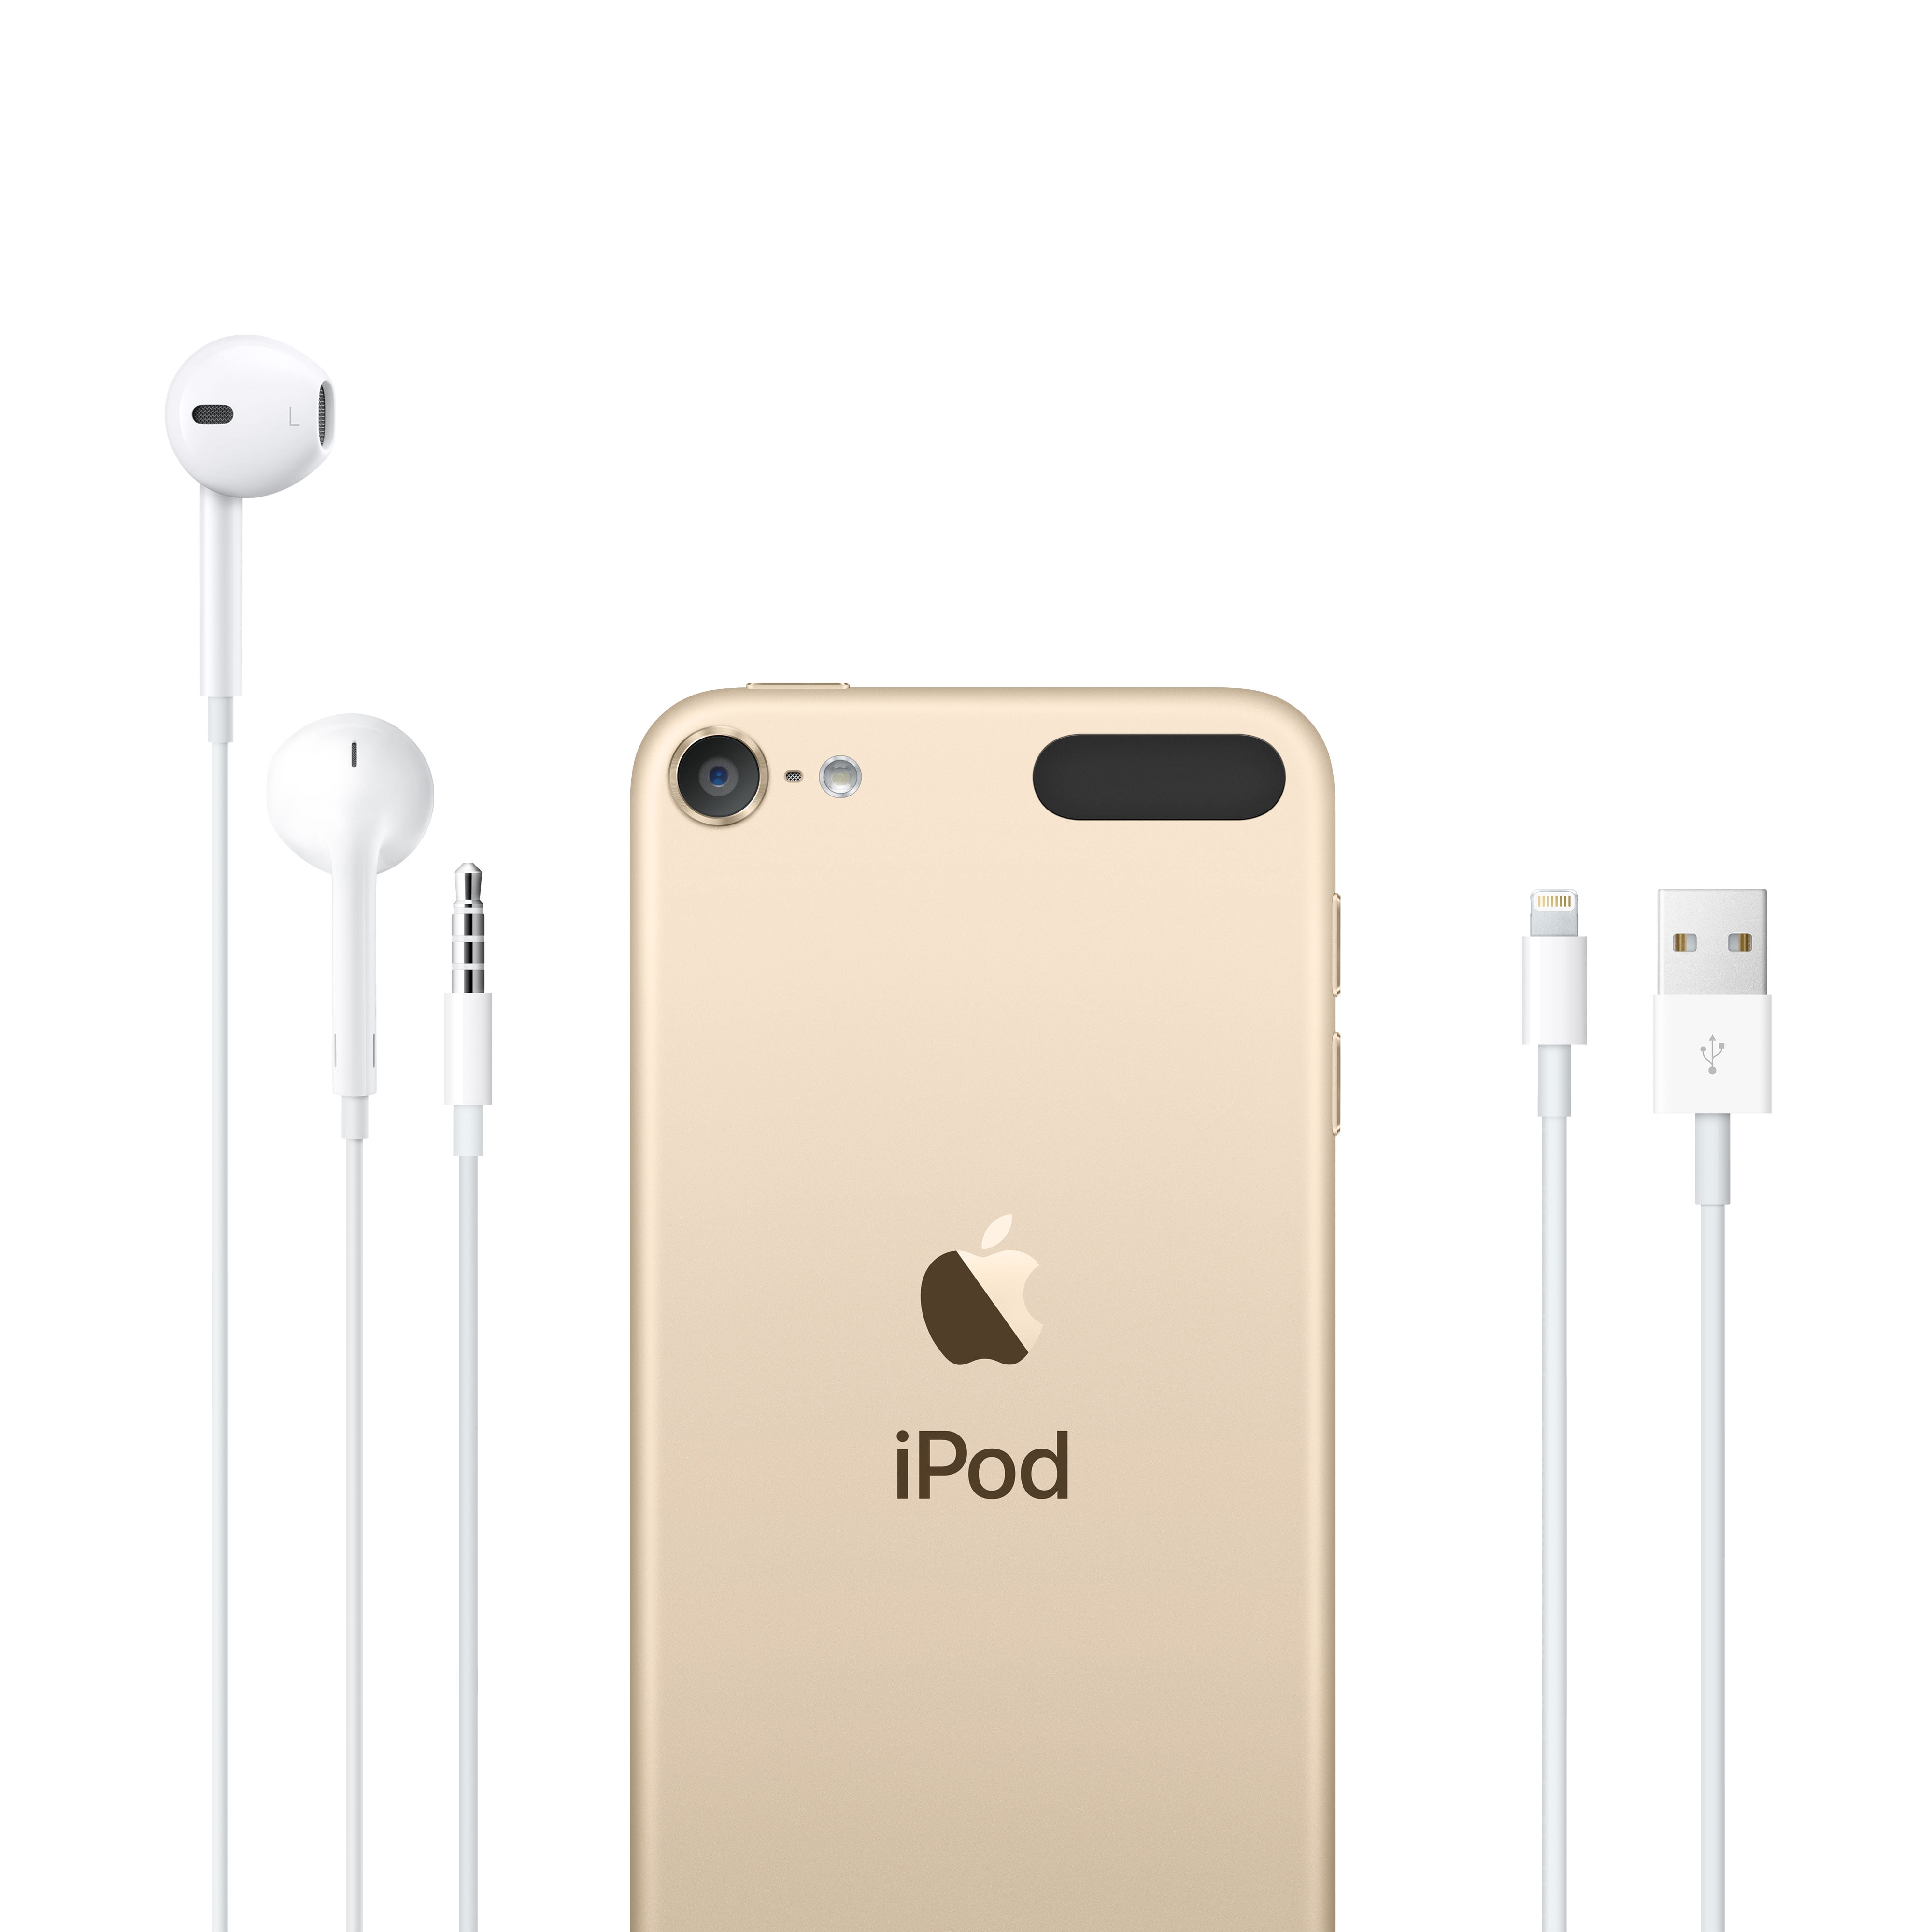 オーディオ機器 ポータブルプレーヤー Apple iPod touch 7th Generation 32GB - Gold (New Model) - Walmart.com